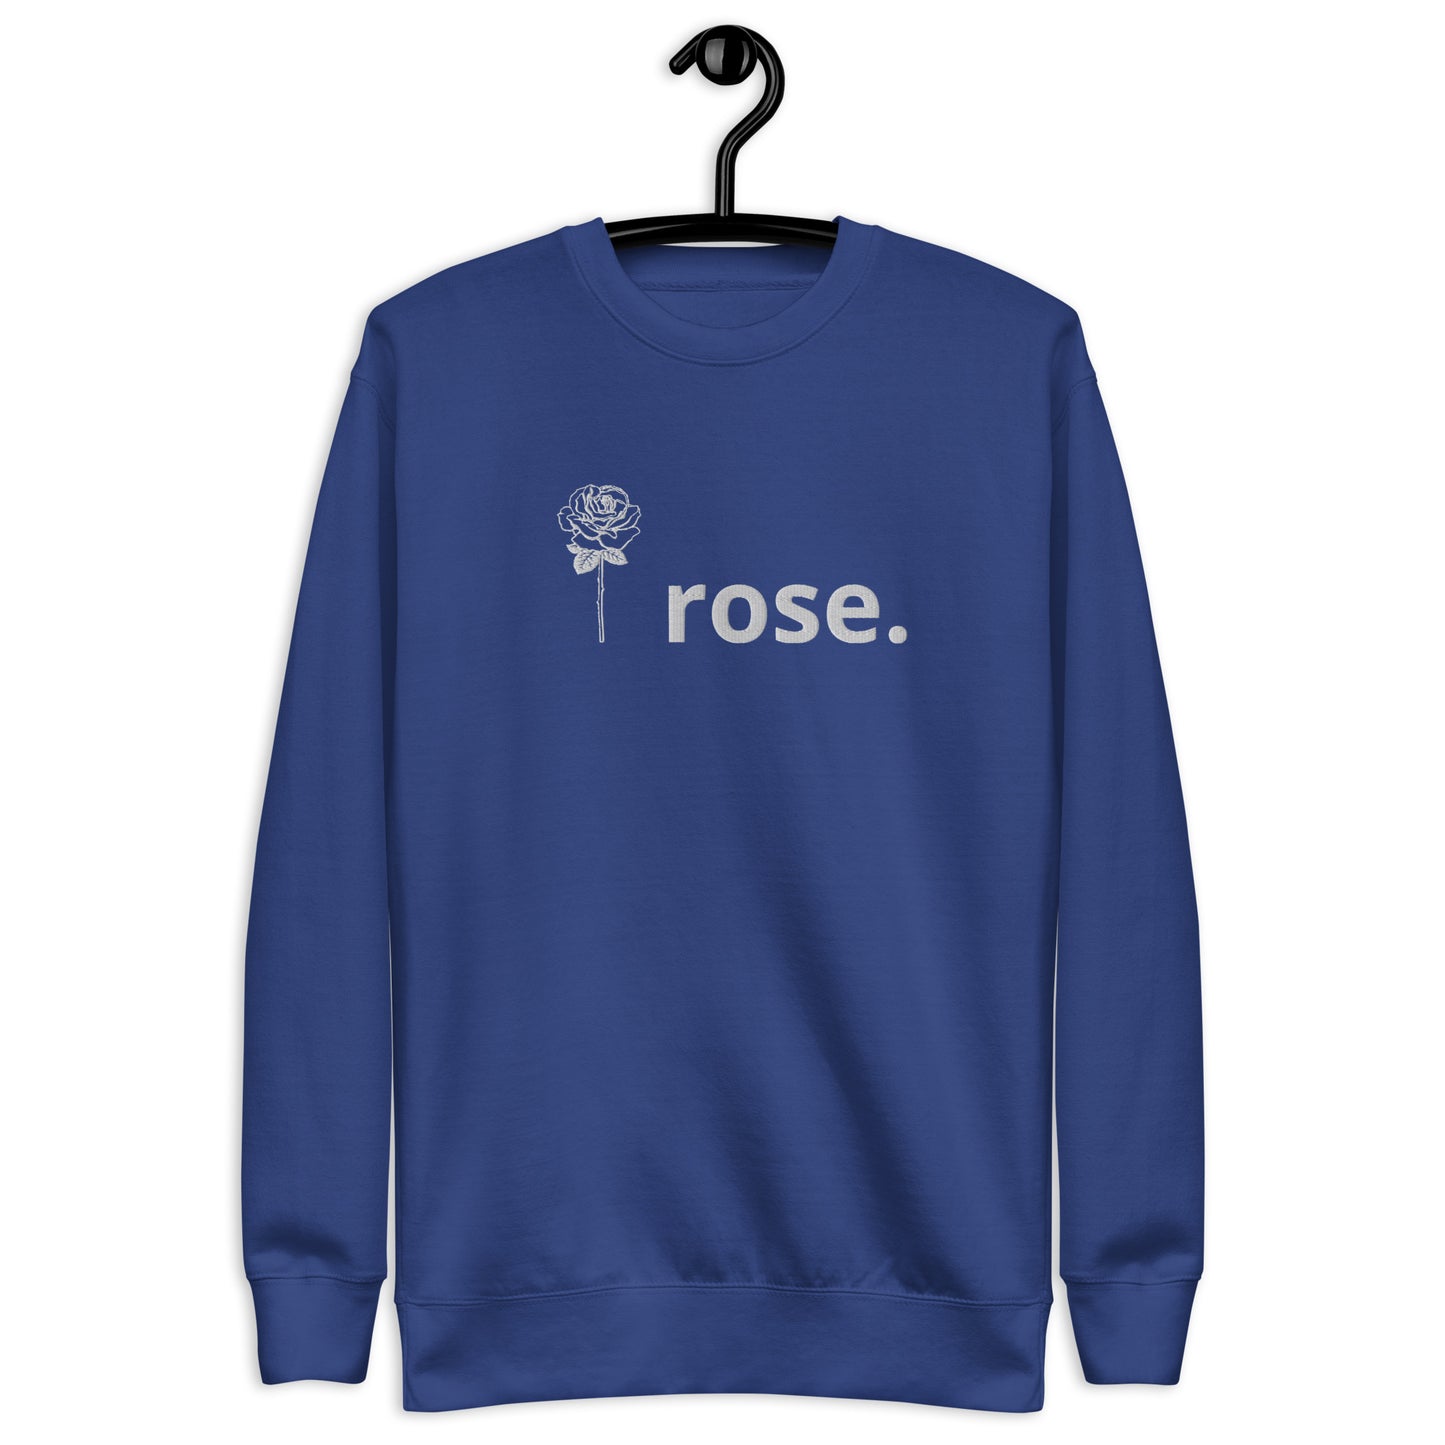 I Rose. Unisex Sweatshirt